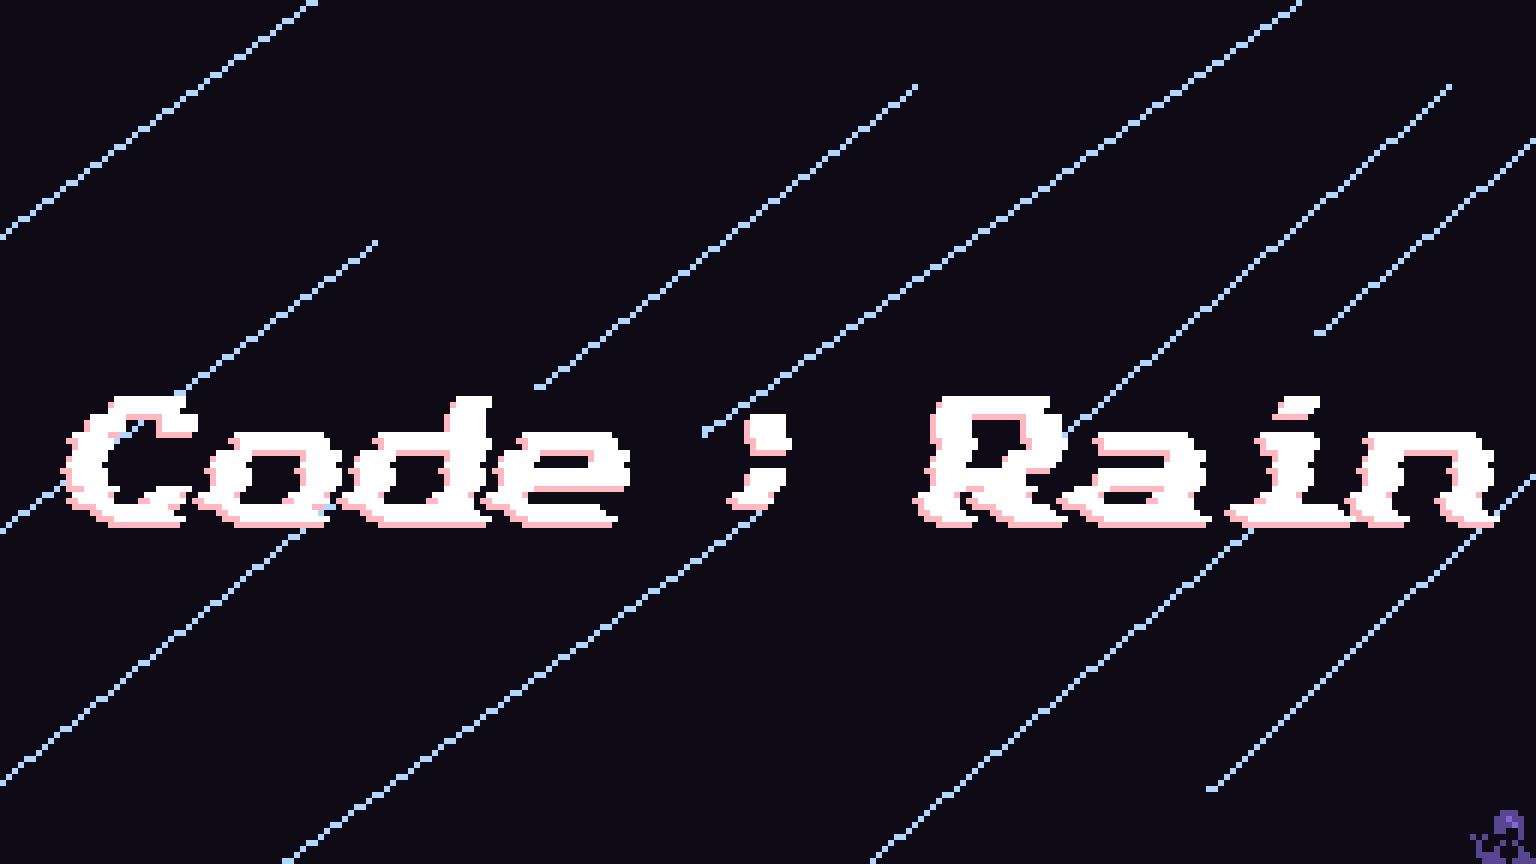 Code Name : Rain